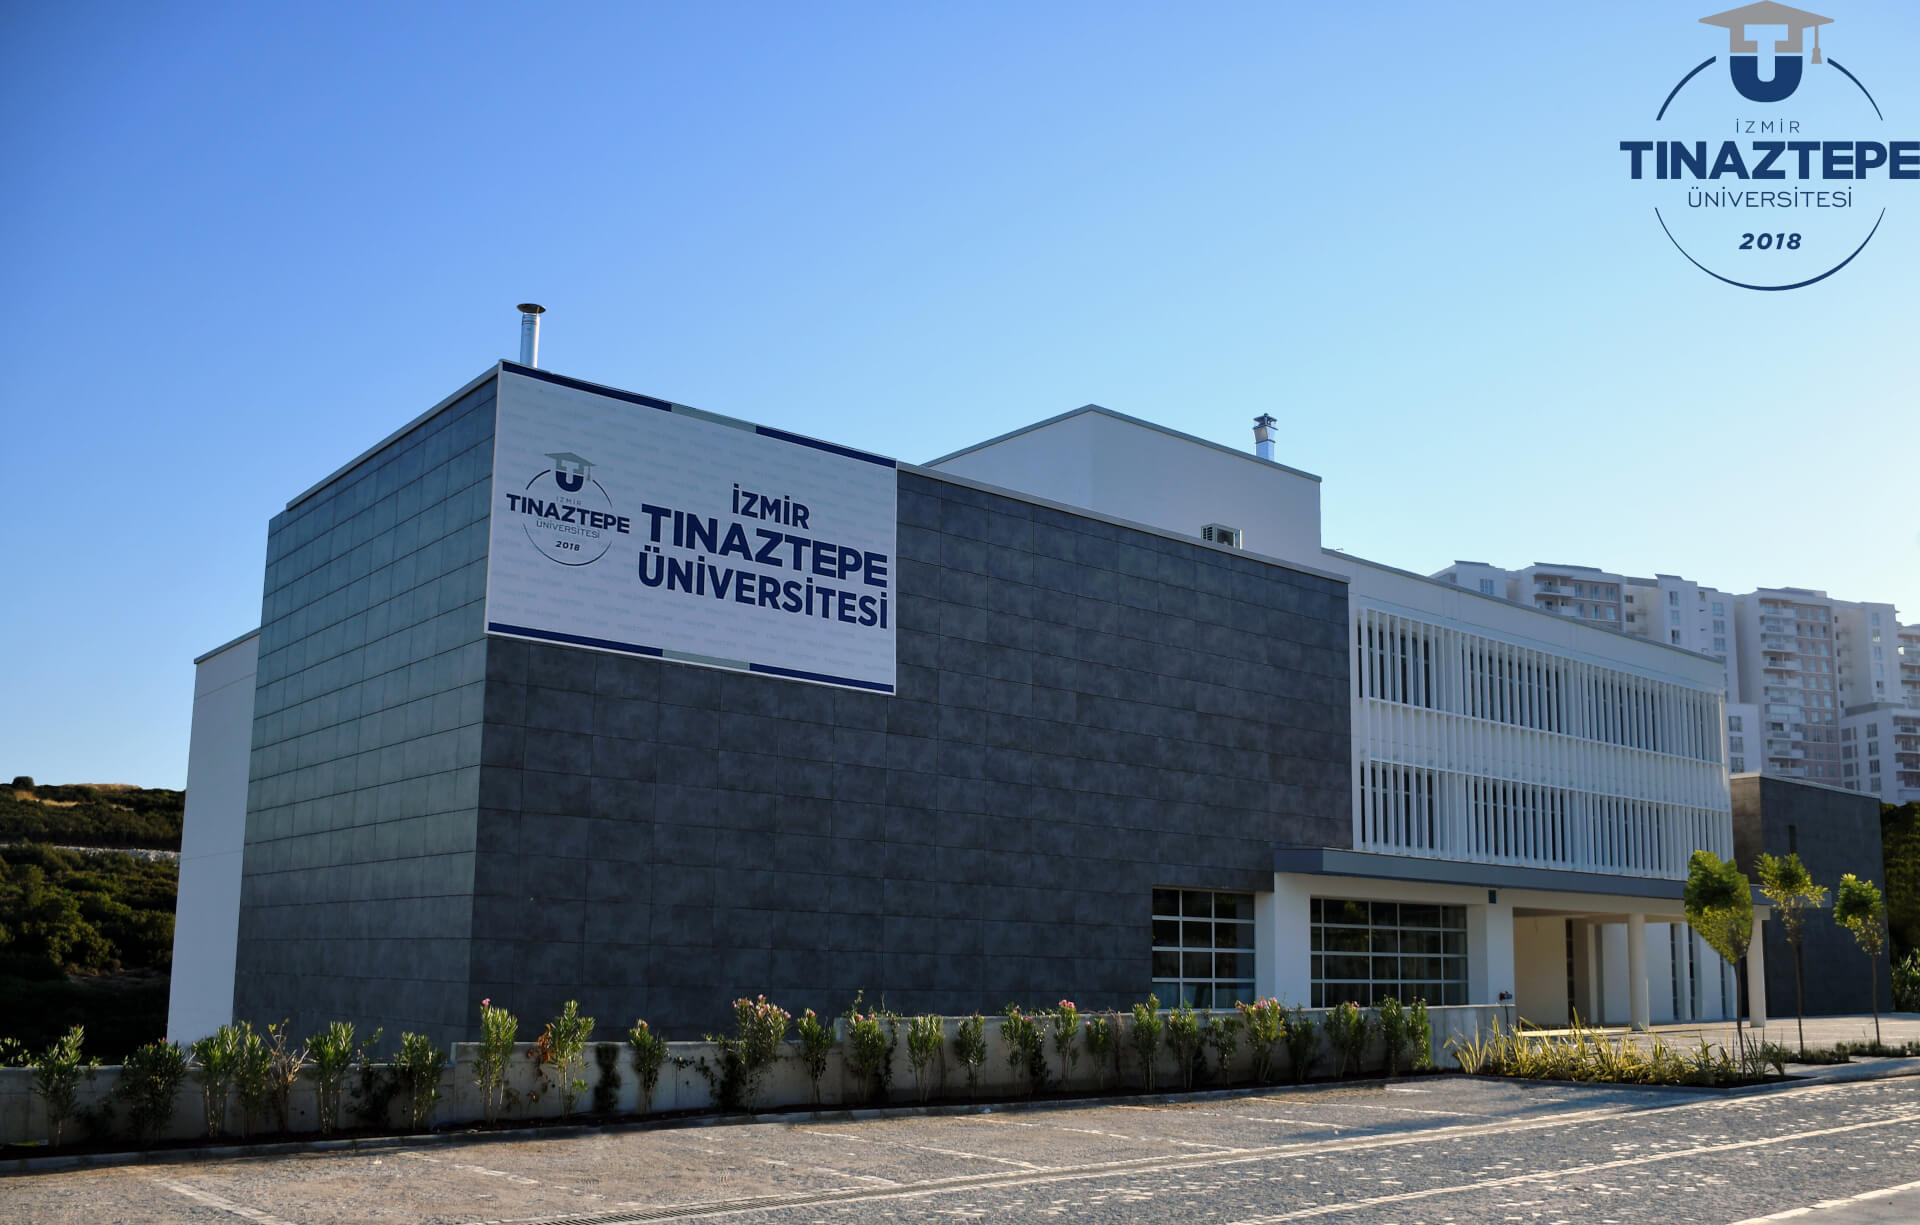 izmitinaz universitesi find and study 2 - İzmir Tınaztəpə Universiteti